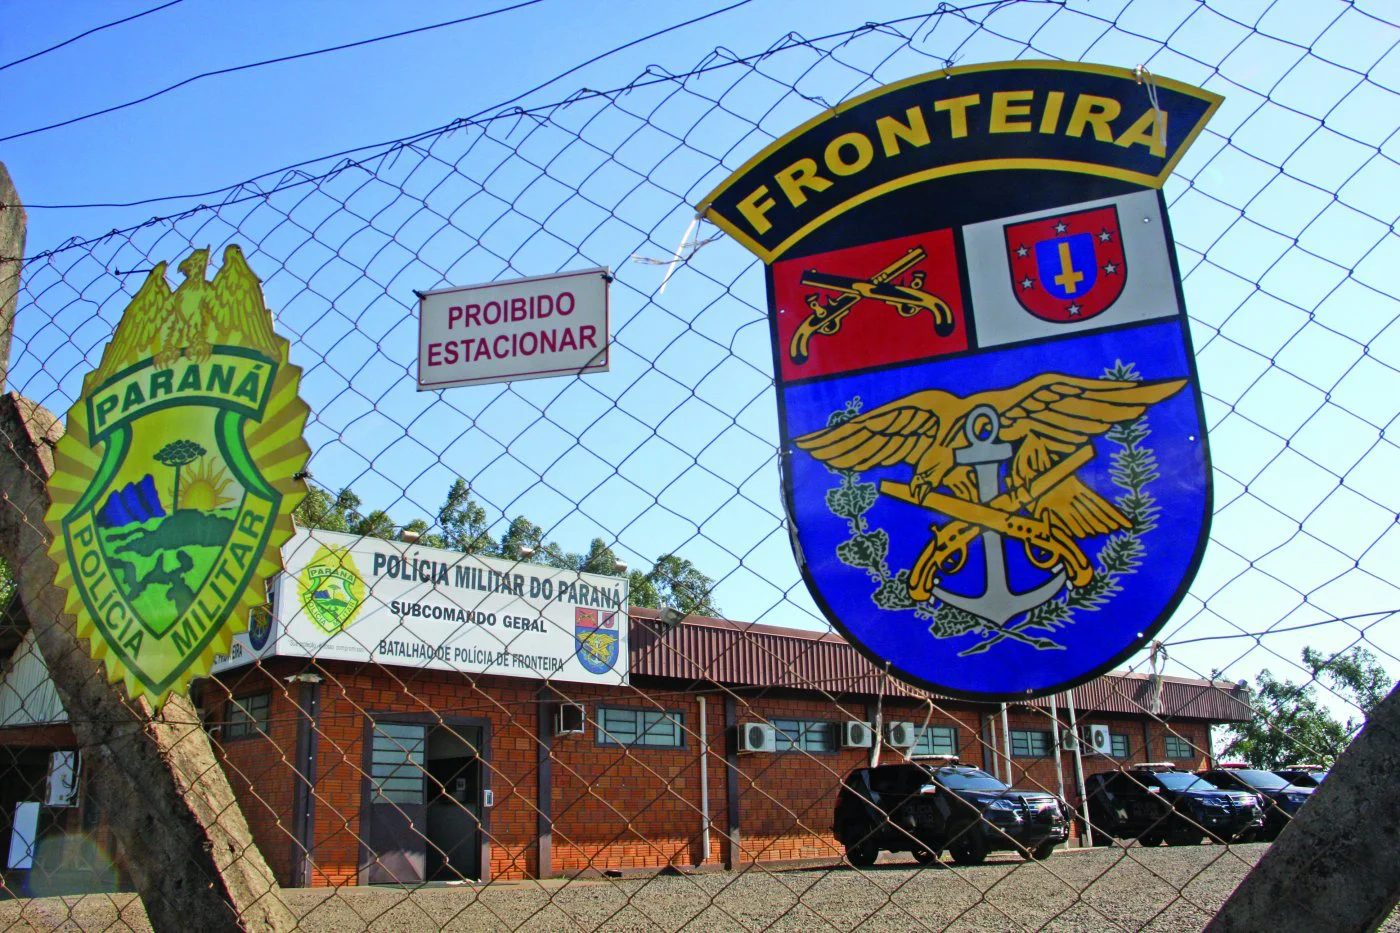 Brasil faz megaoperação militar nas fronteiras com Argentina